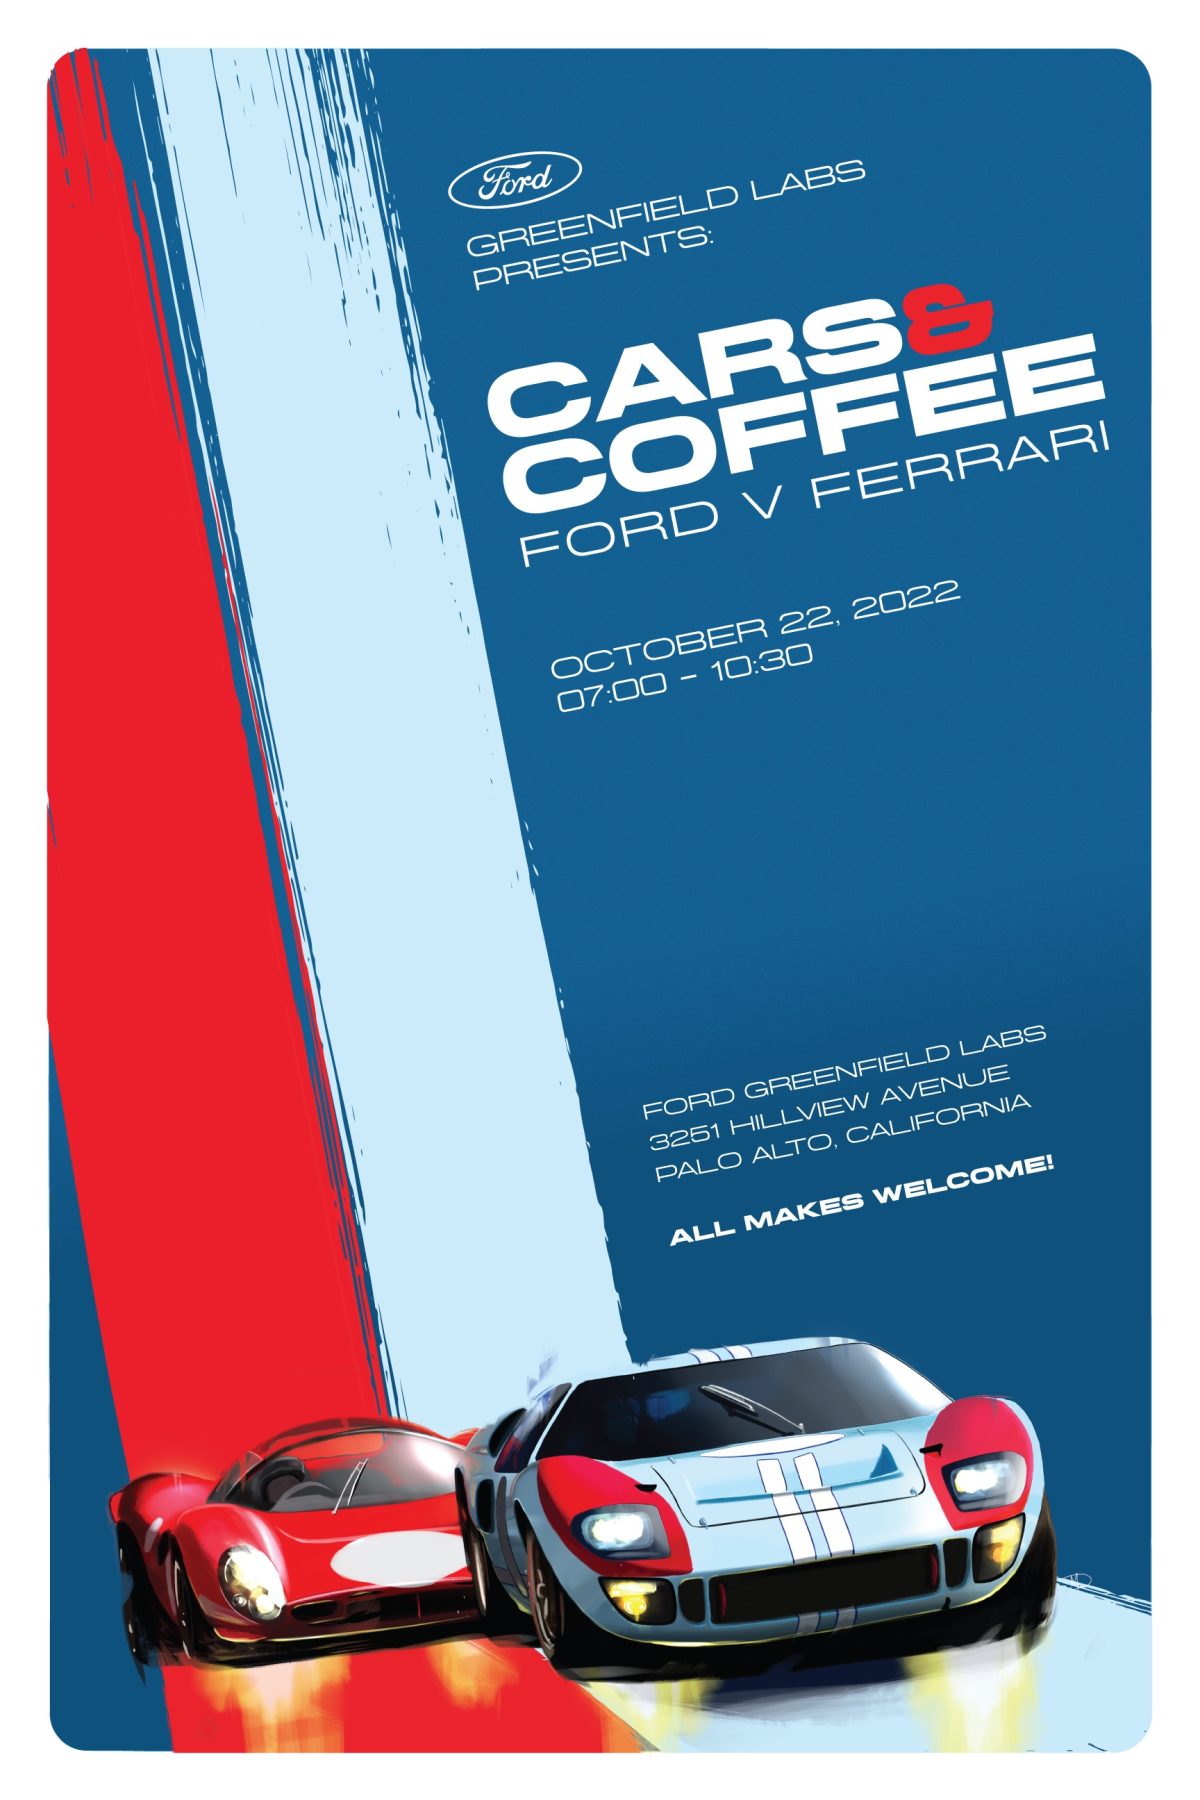 Ford v Ferrari Cars and Coffee